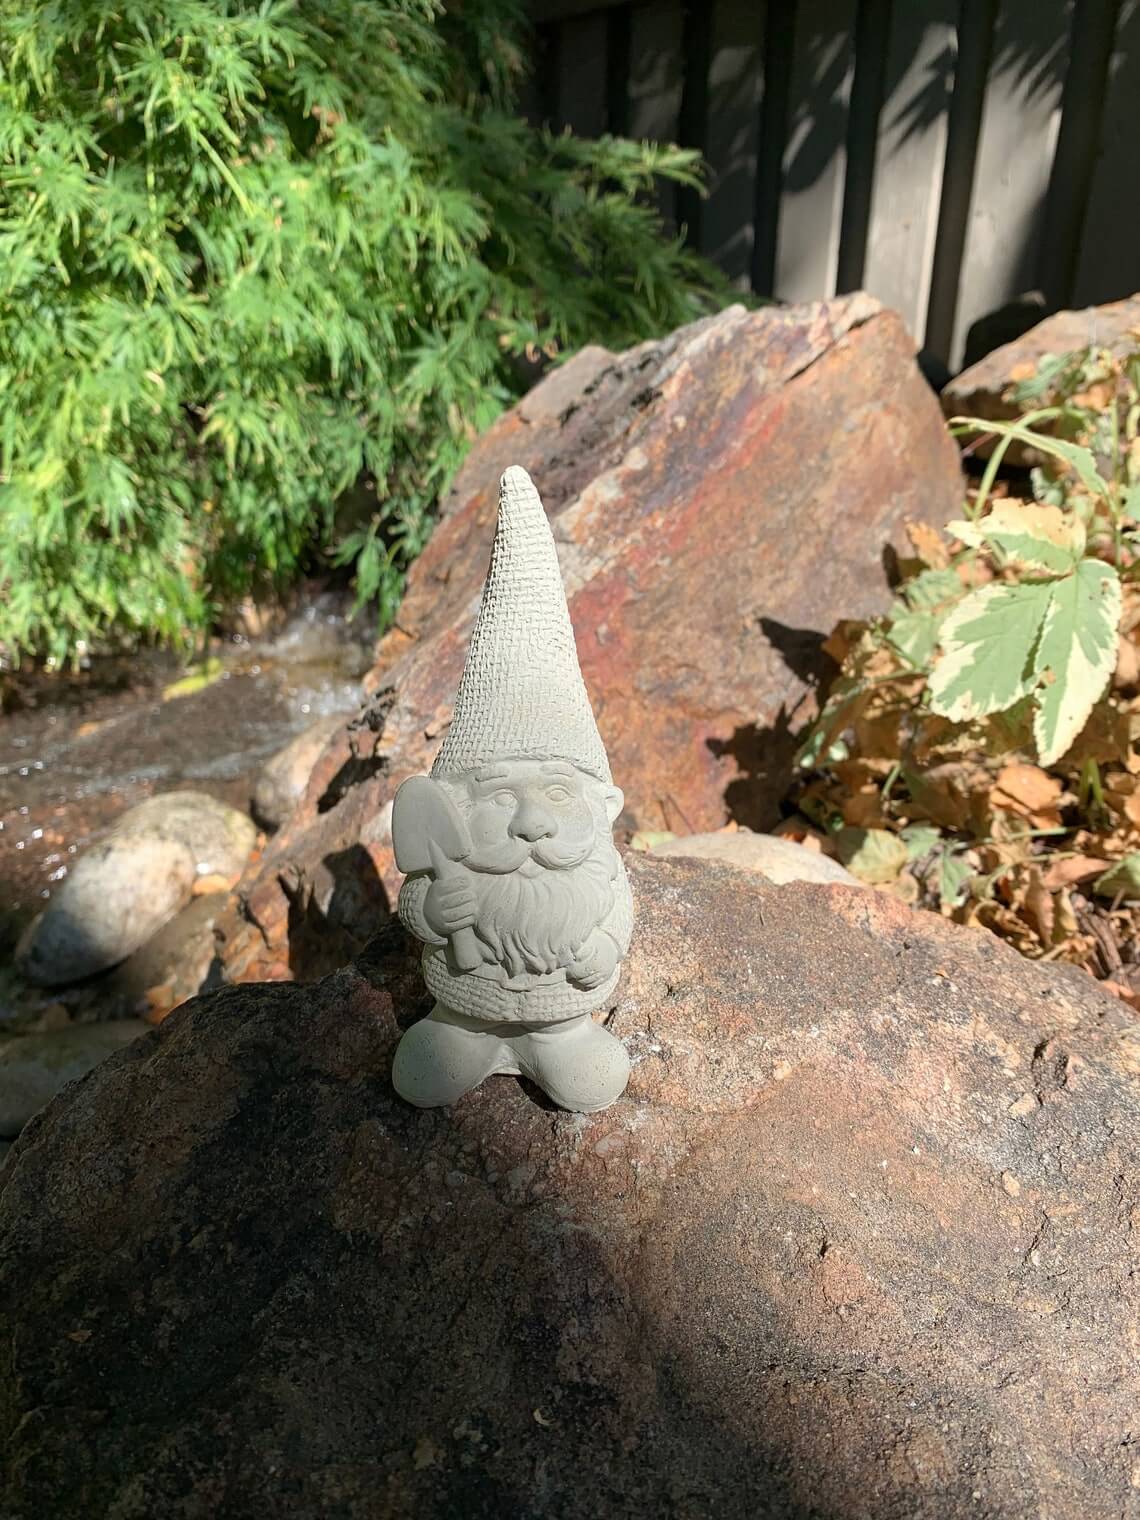 Textured Garden Gnome with Shovel